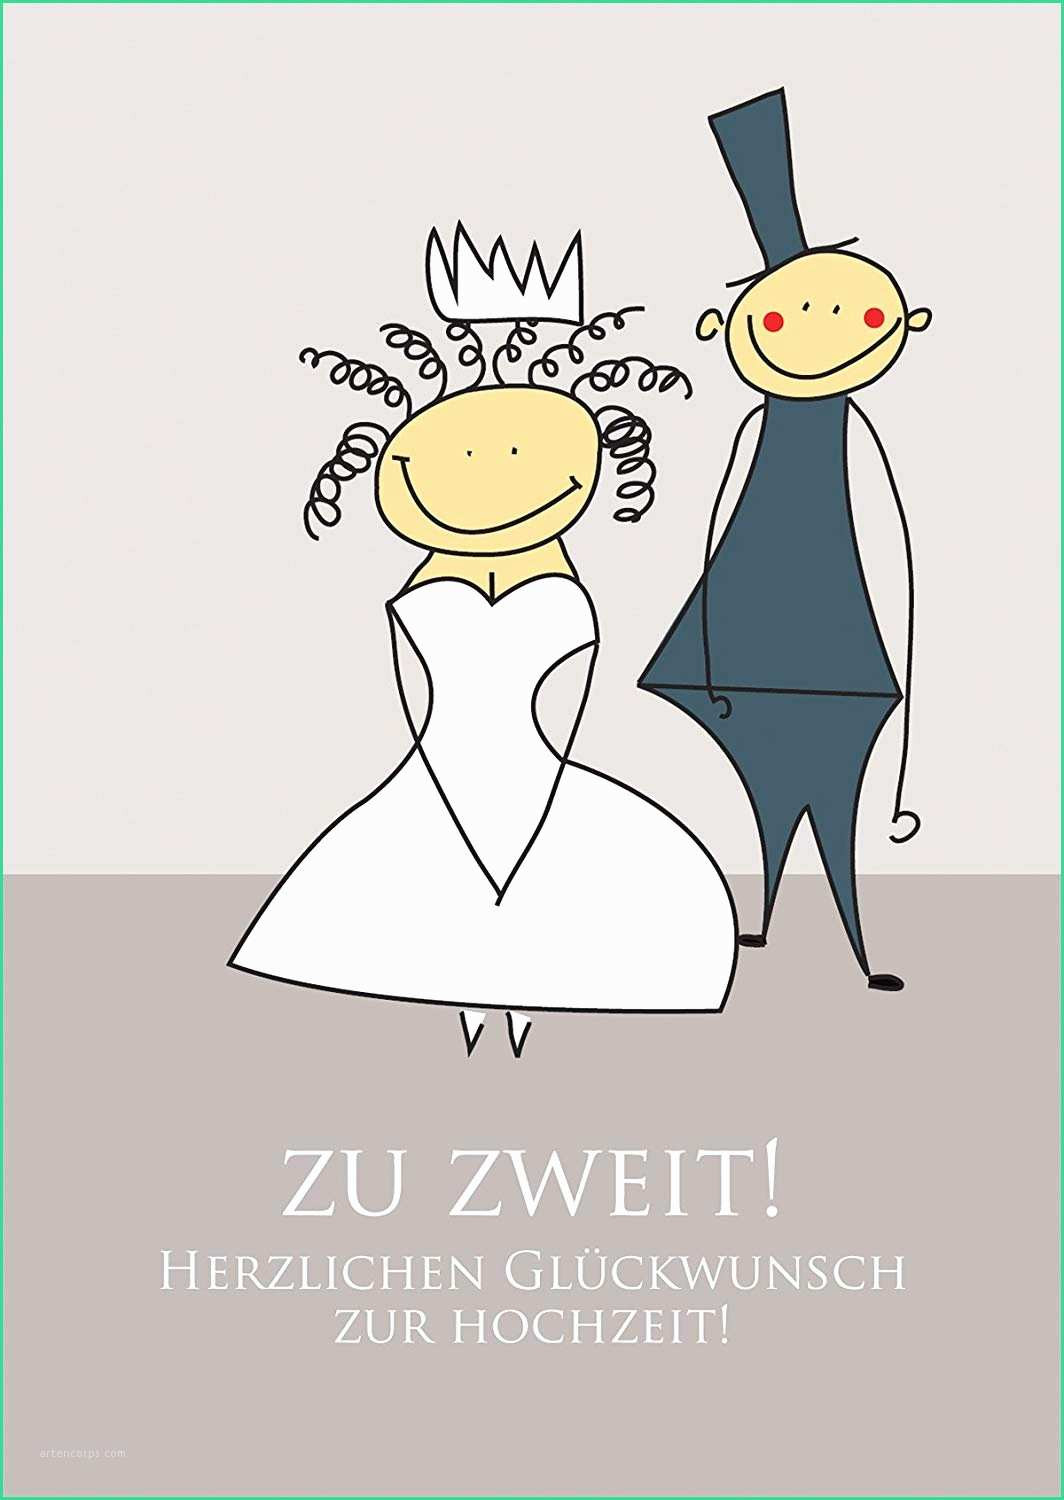 Top 20 Hochzeit Lustig Bilder - Beste Wohnkultur, Bastelideen, Coloring ganzes Whatsapp Glückwünsche Zum Hochzeitstag Lustig